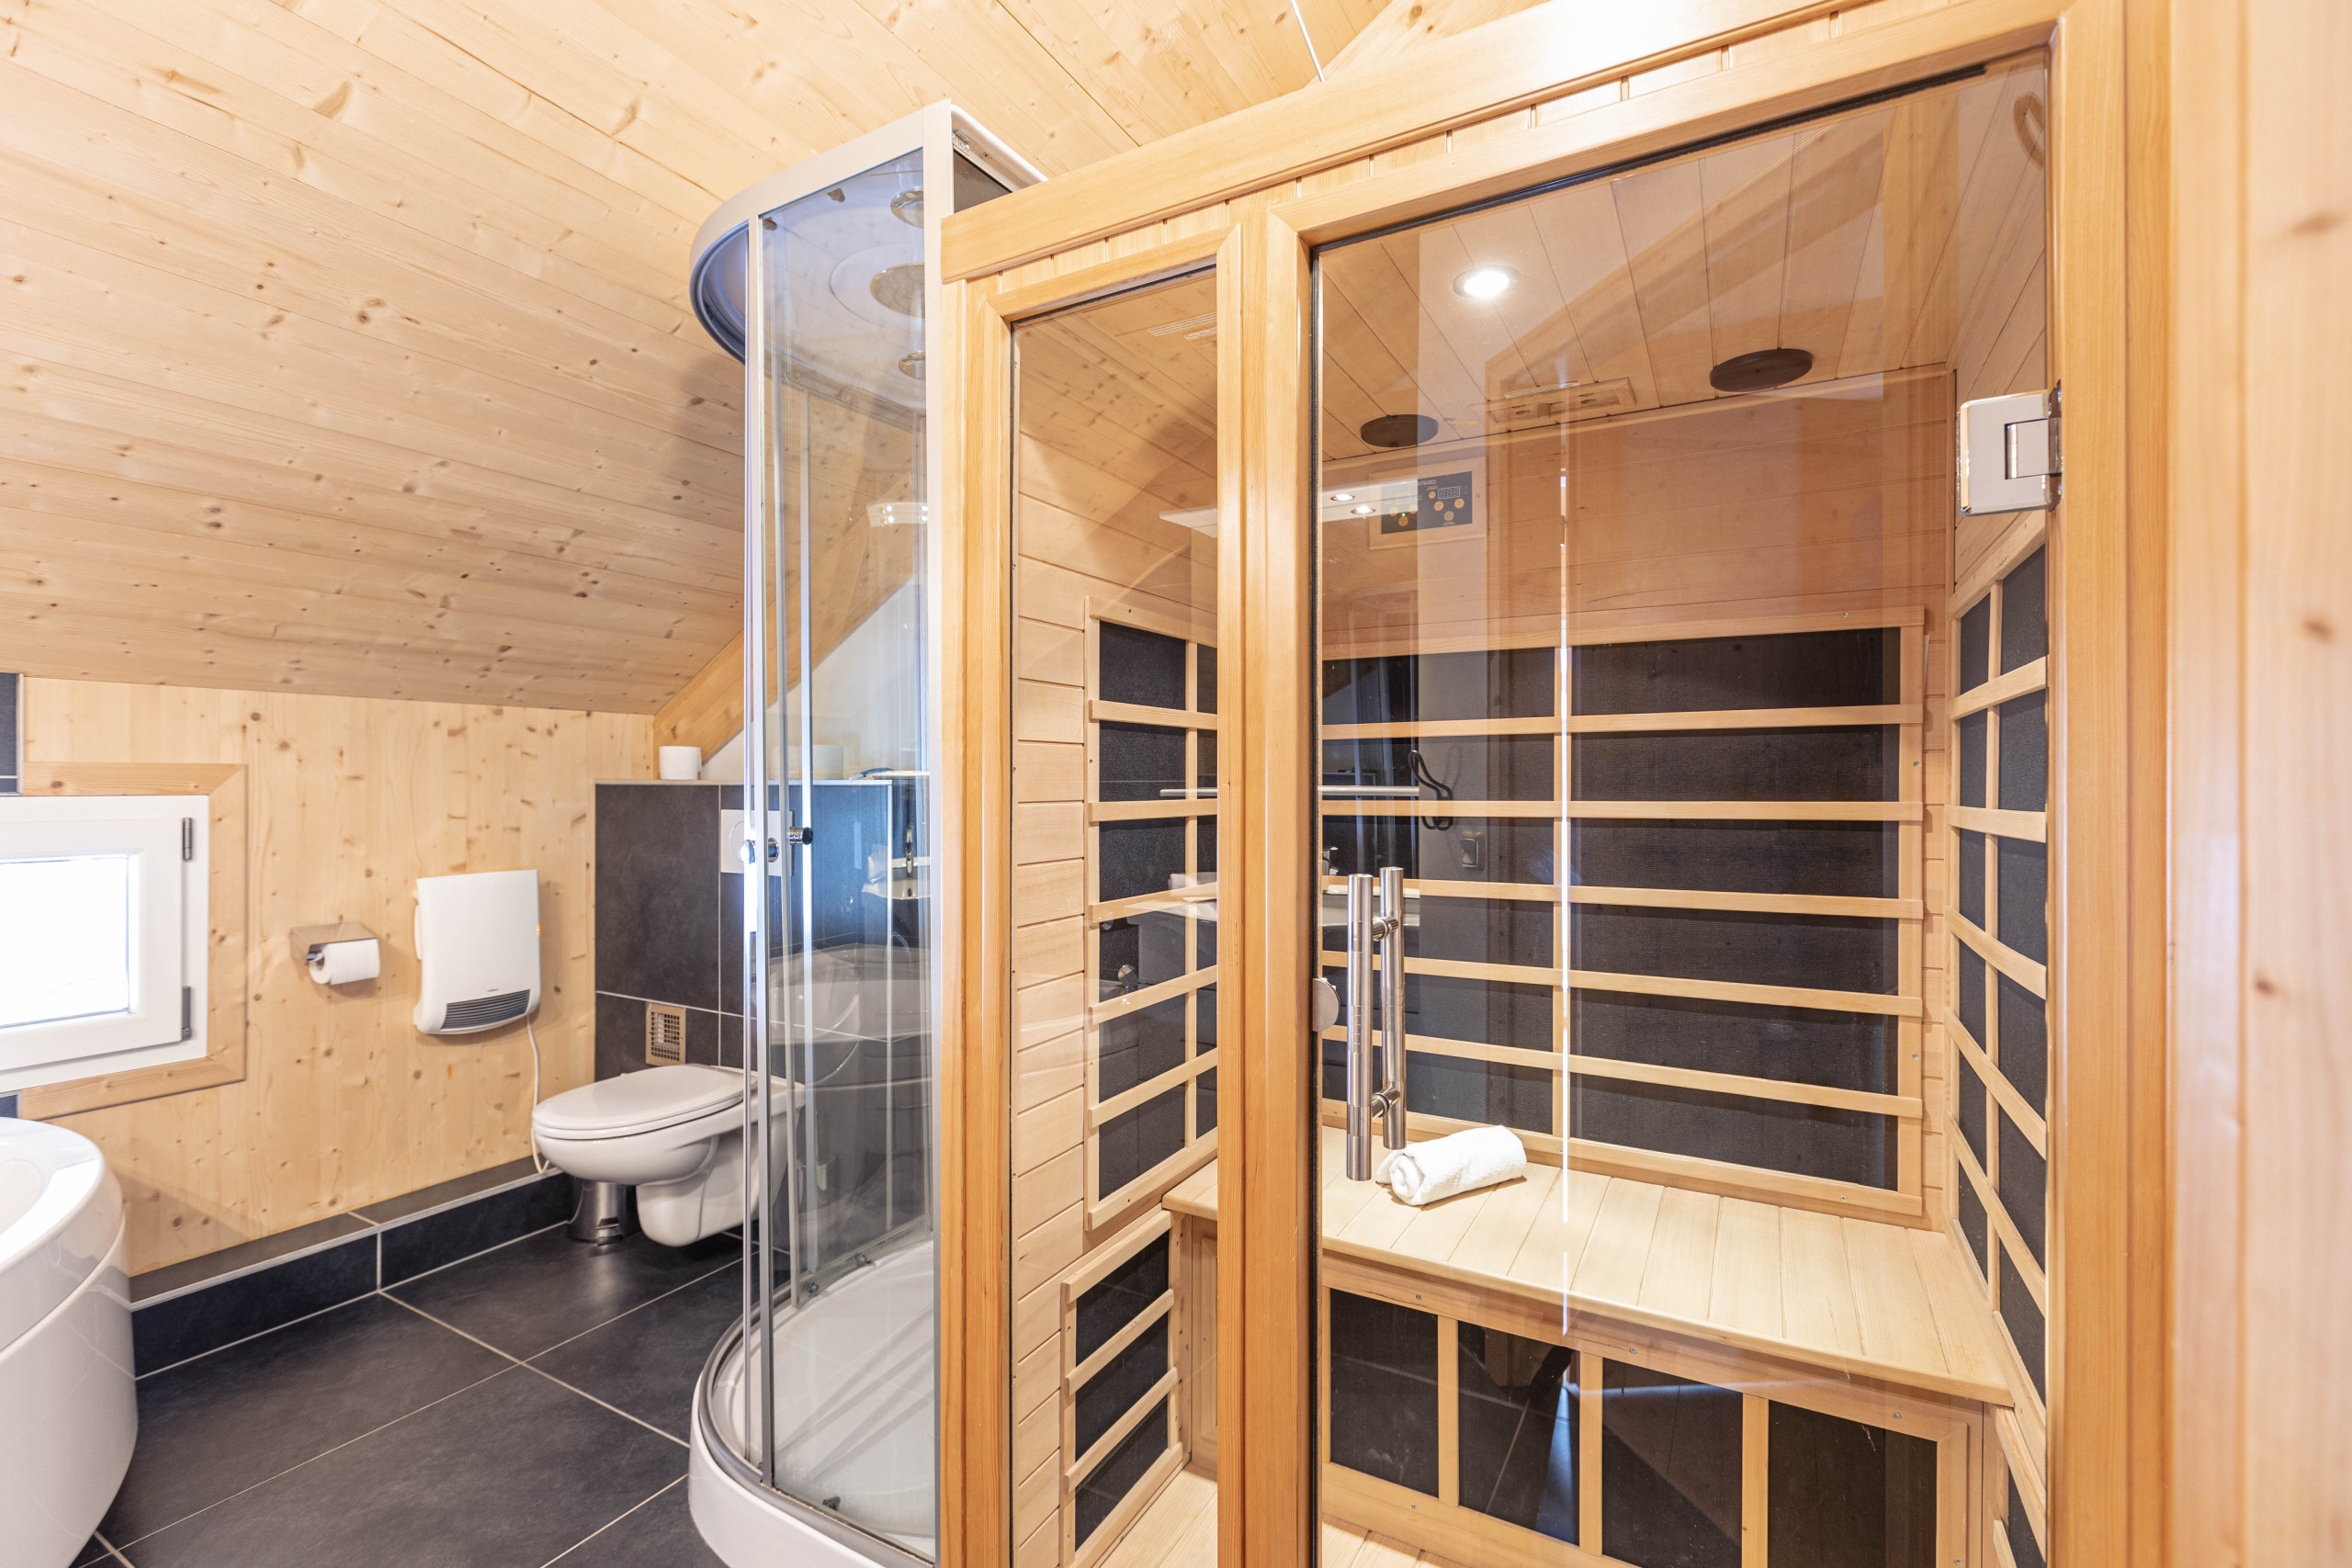  in Murau - Vakantiehuis # 22 met 4 slaapkamers & IR-sauna